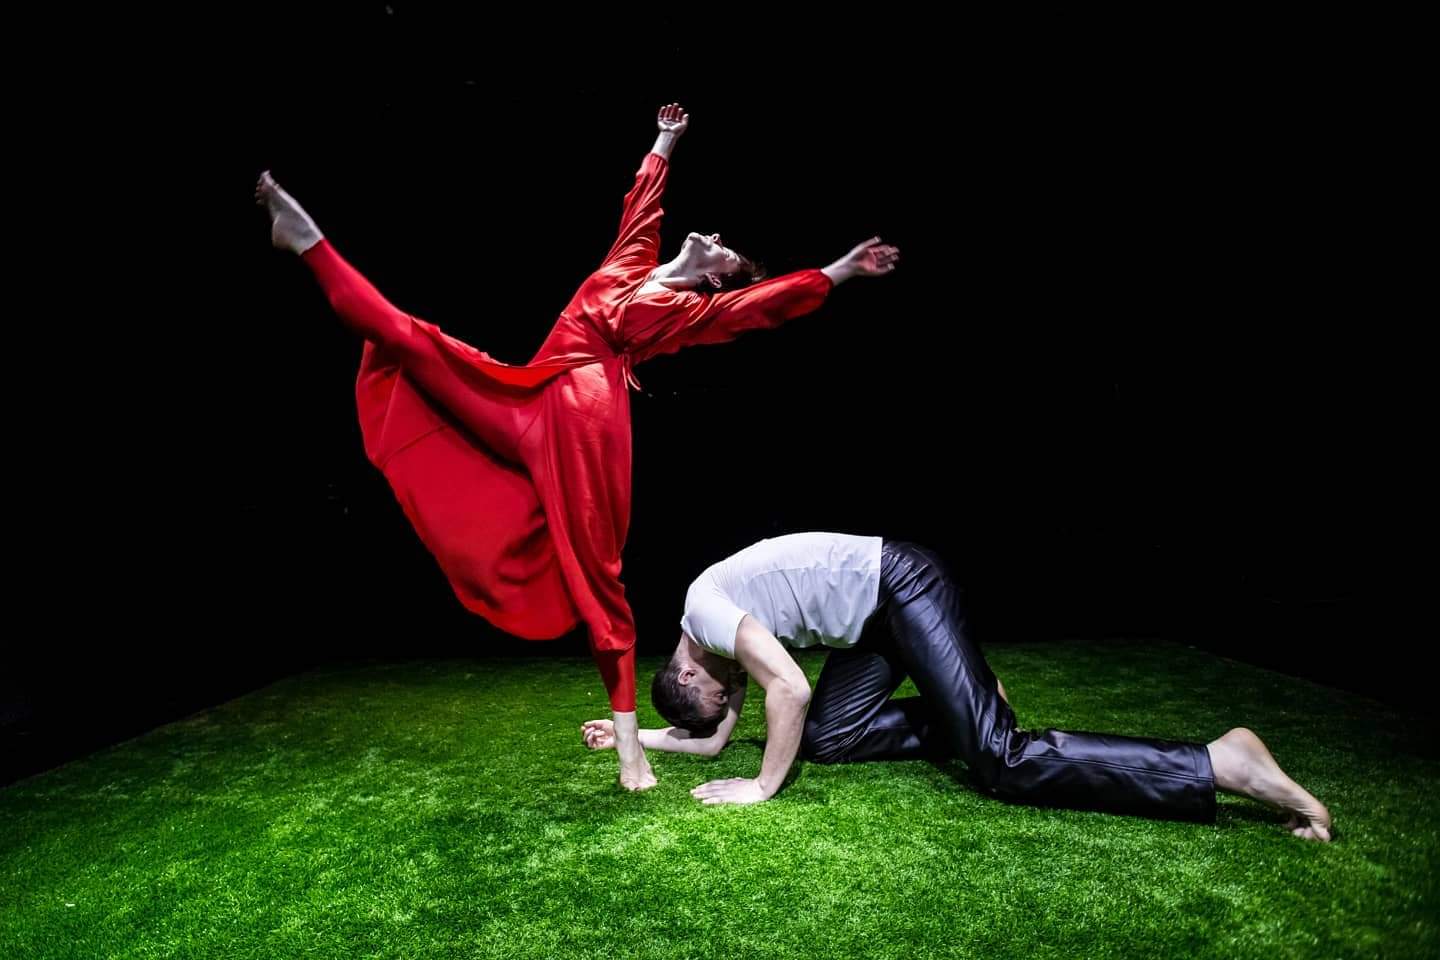 Nykykoreografian festivaali Nord Dance kokoa yhteen parhaita venäläisiä tanssijoita. Kuvassa Dialog-Dance-ryhmän Prinsessa Ruusunen. 6+. Kuva: Karjalan musiikkiteatteri